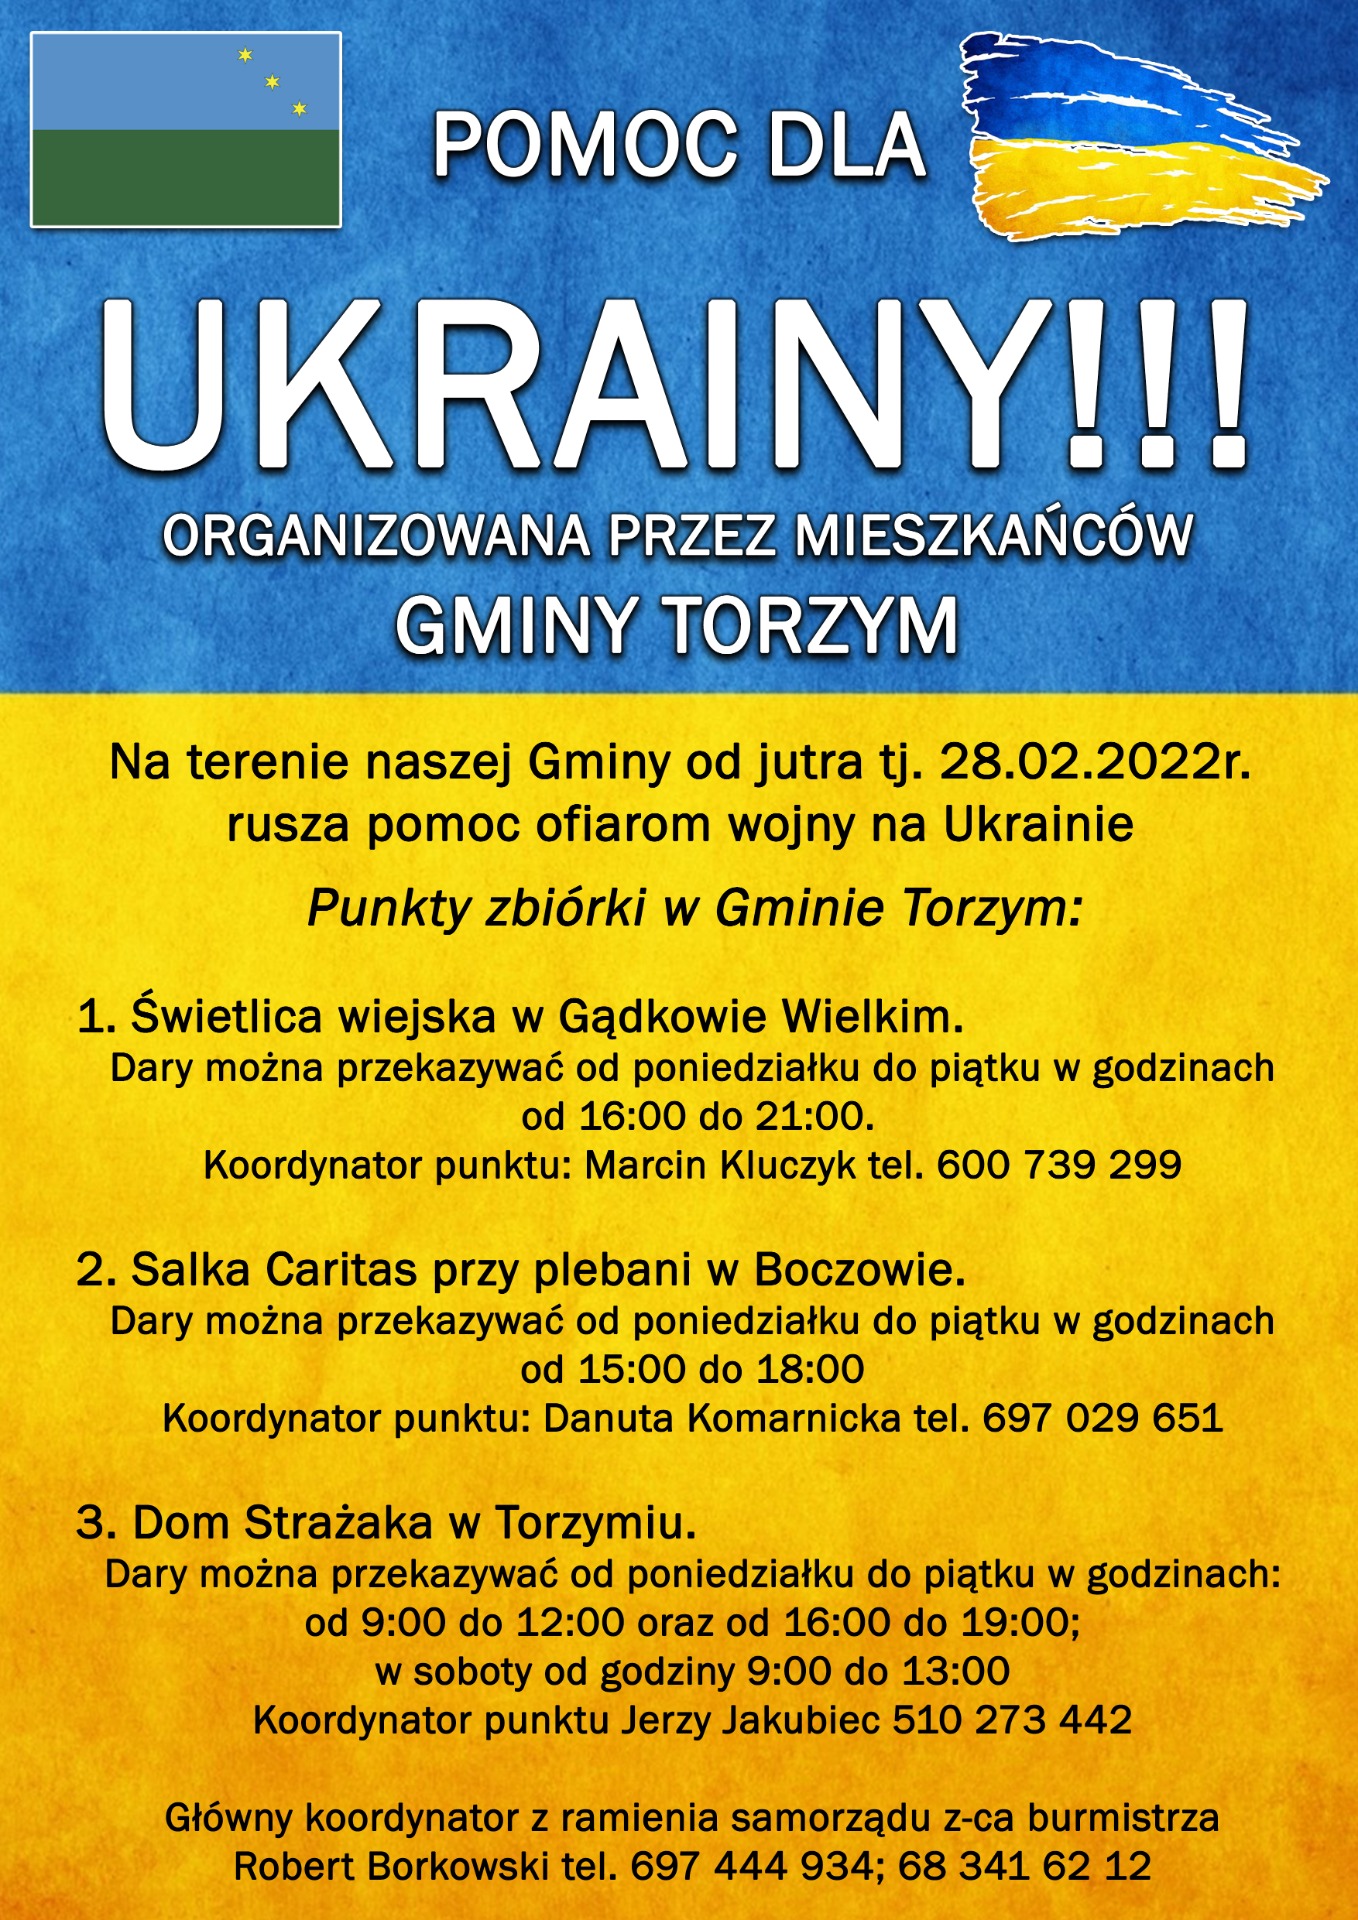 POMOC DLA UKRAINY ORGANIZOWANA PRZEZ MIESZKAŃCÓW GMINY TORZYM - Obrazek 1